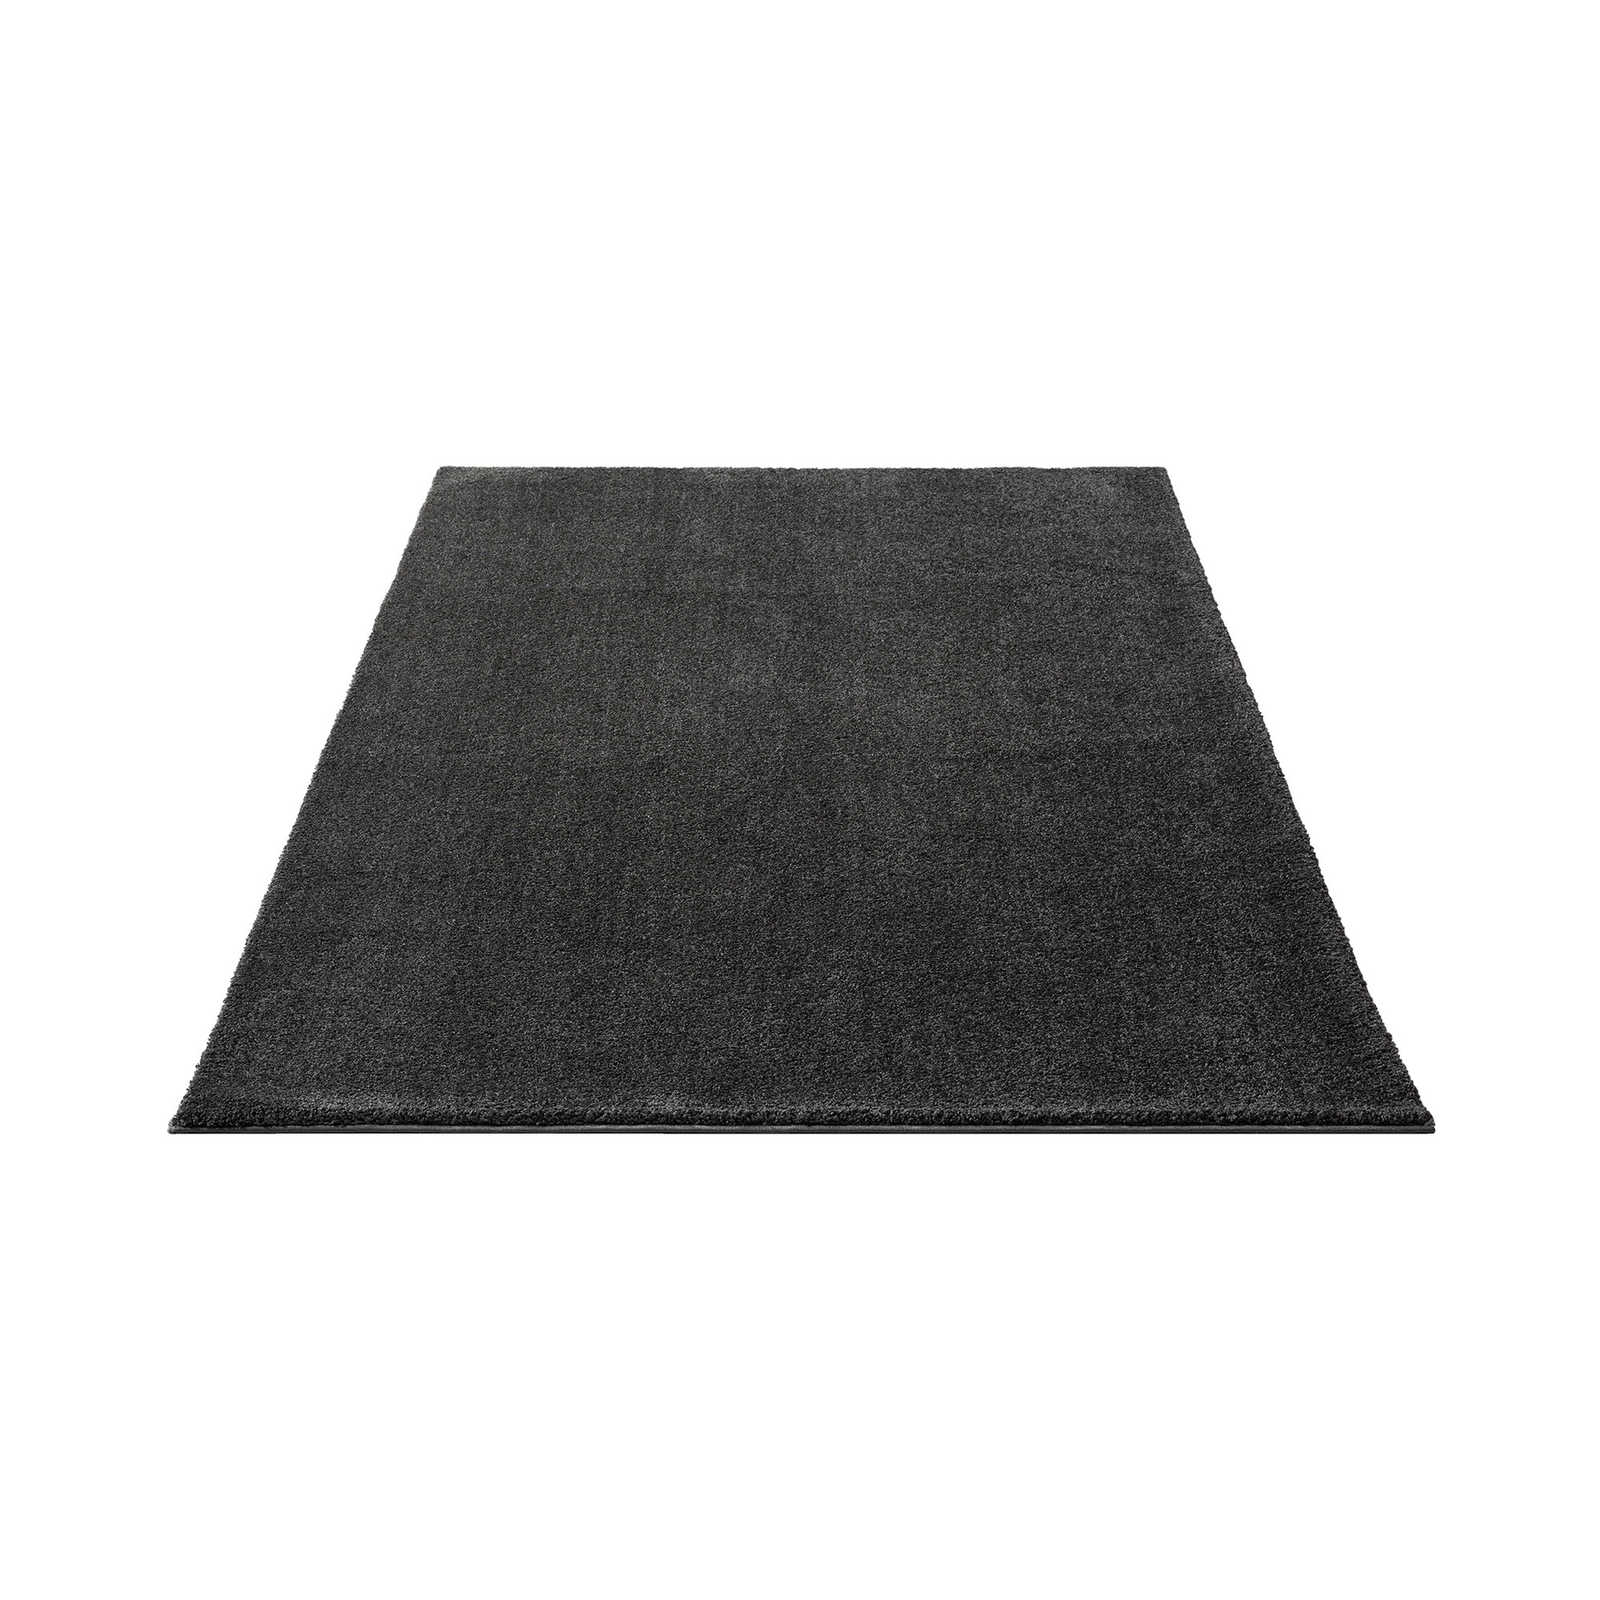 Zacht kortpolig tapijt in antraciet - 230 x 160 cm
